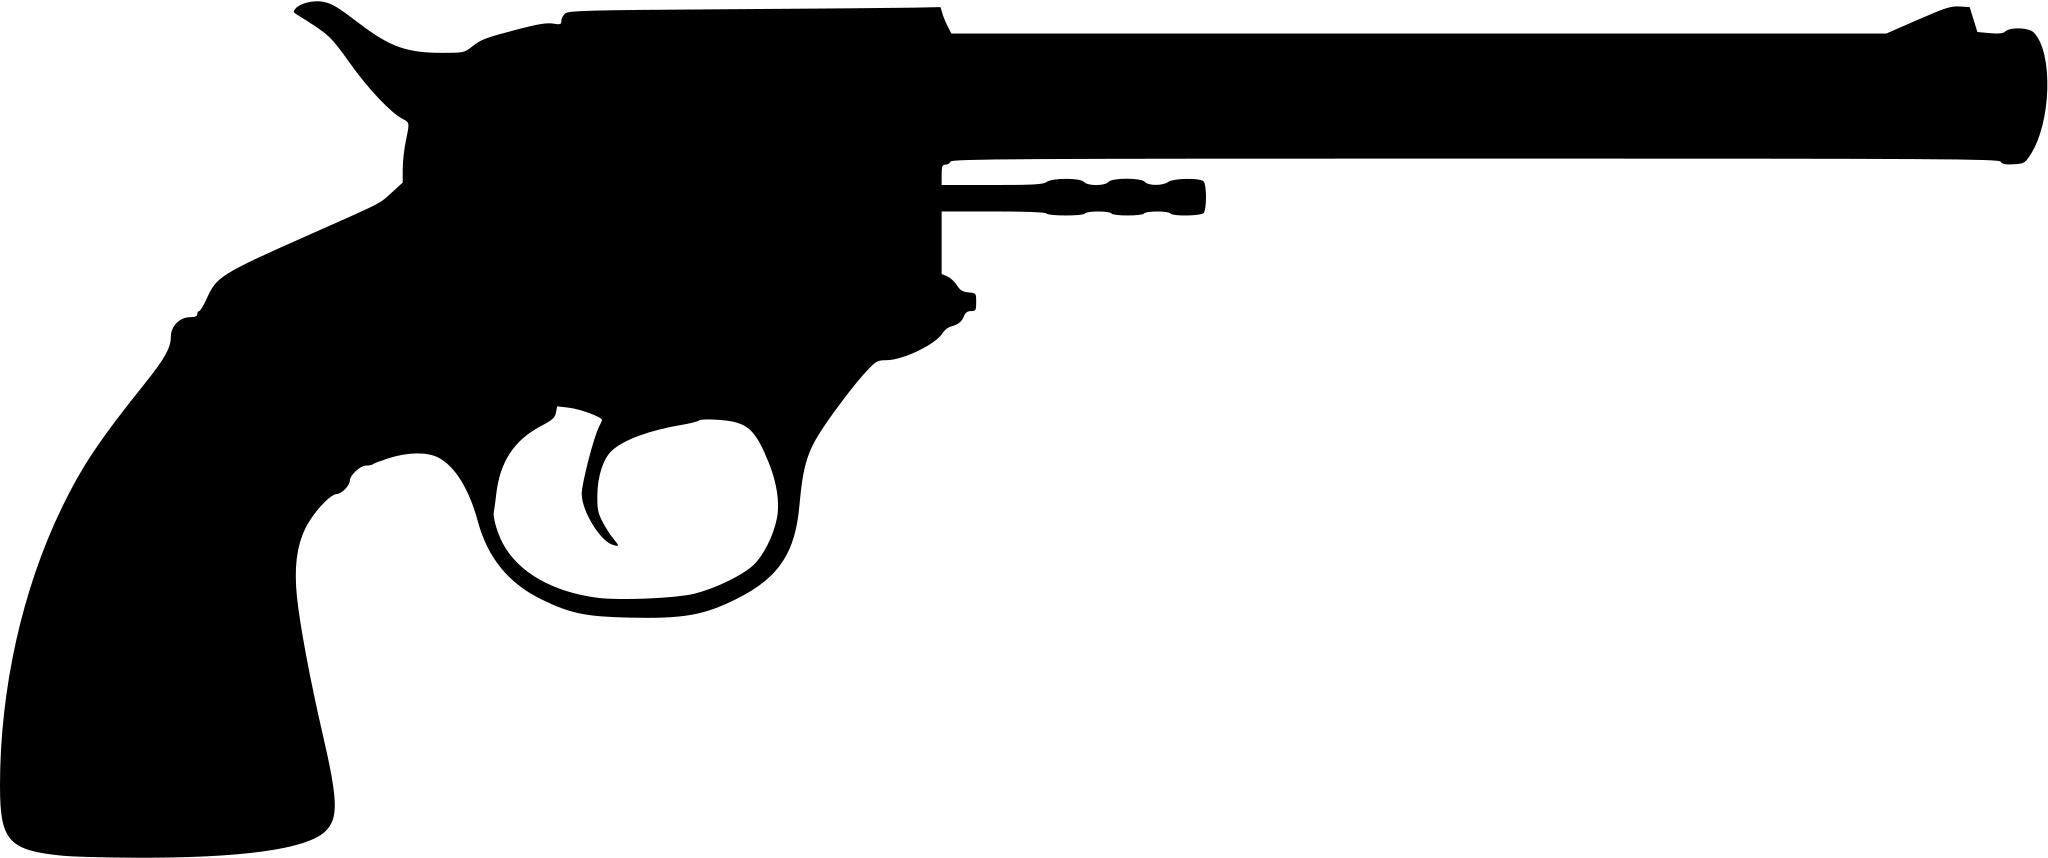 Пистолет символ